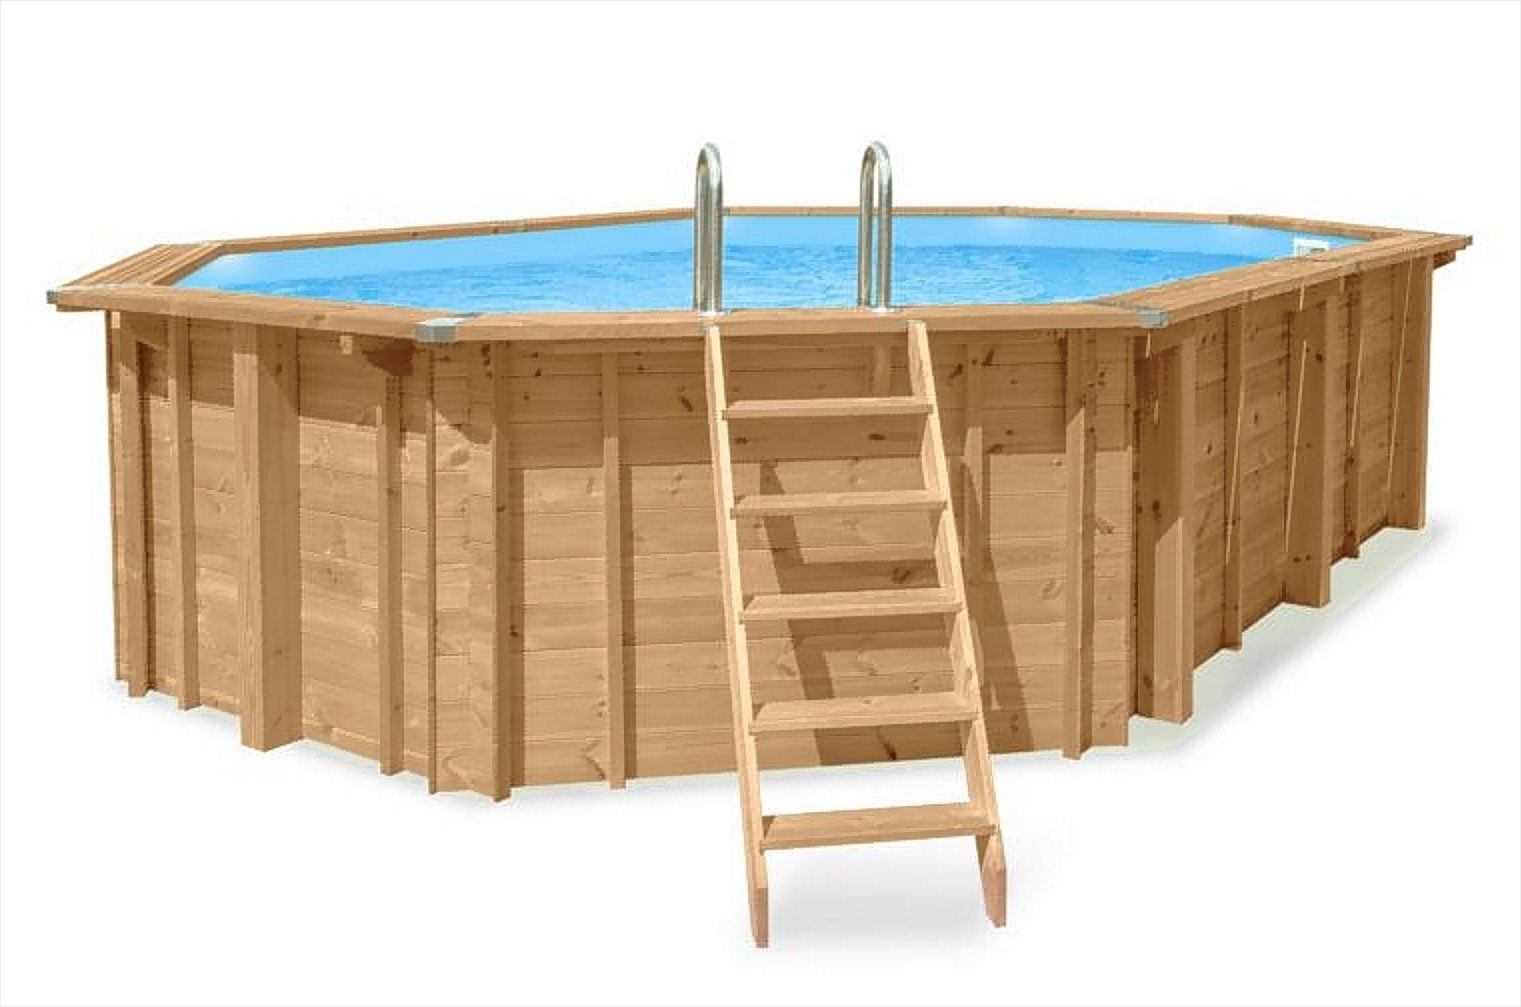 Sunnydream 07 houten zwembad, ovaal, 8,40 x 4,90 meter, inclusief premium filtersysteem, filtermedium, zwembadtrap, zwembadfolie, vloer- en wandvlies, roestvrijstalen hoekverbindingen